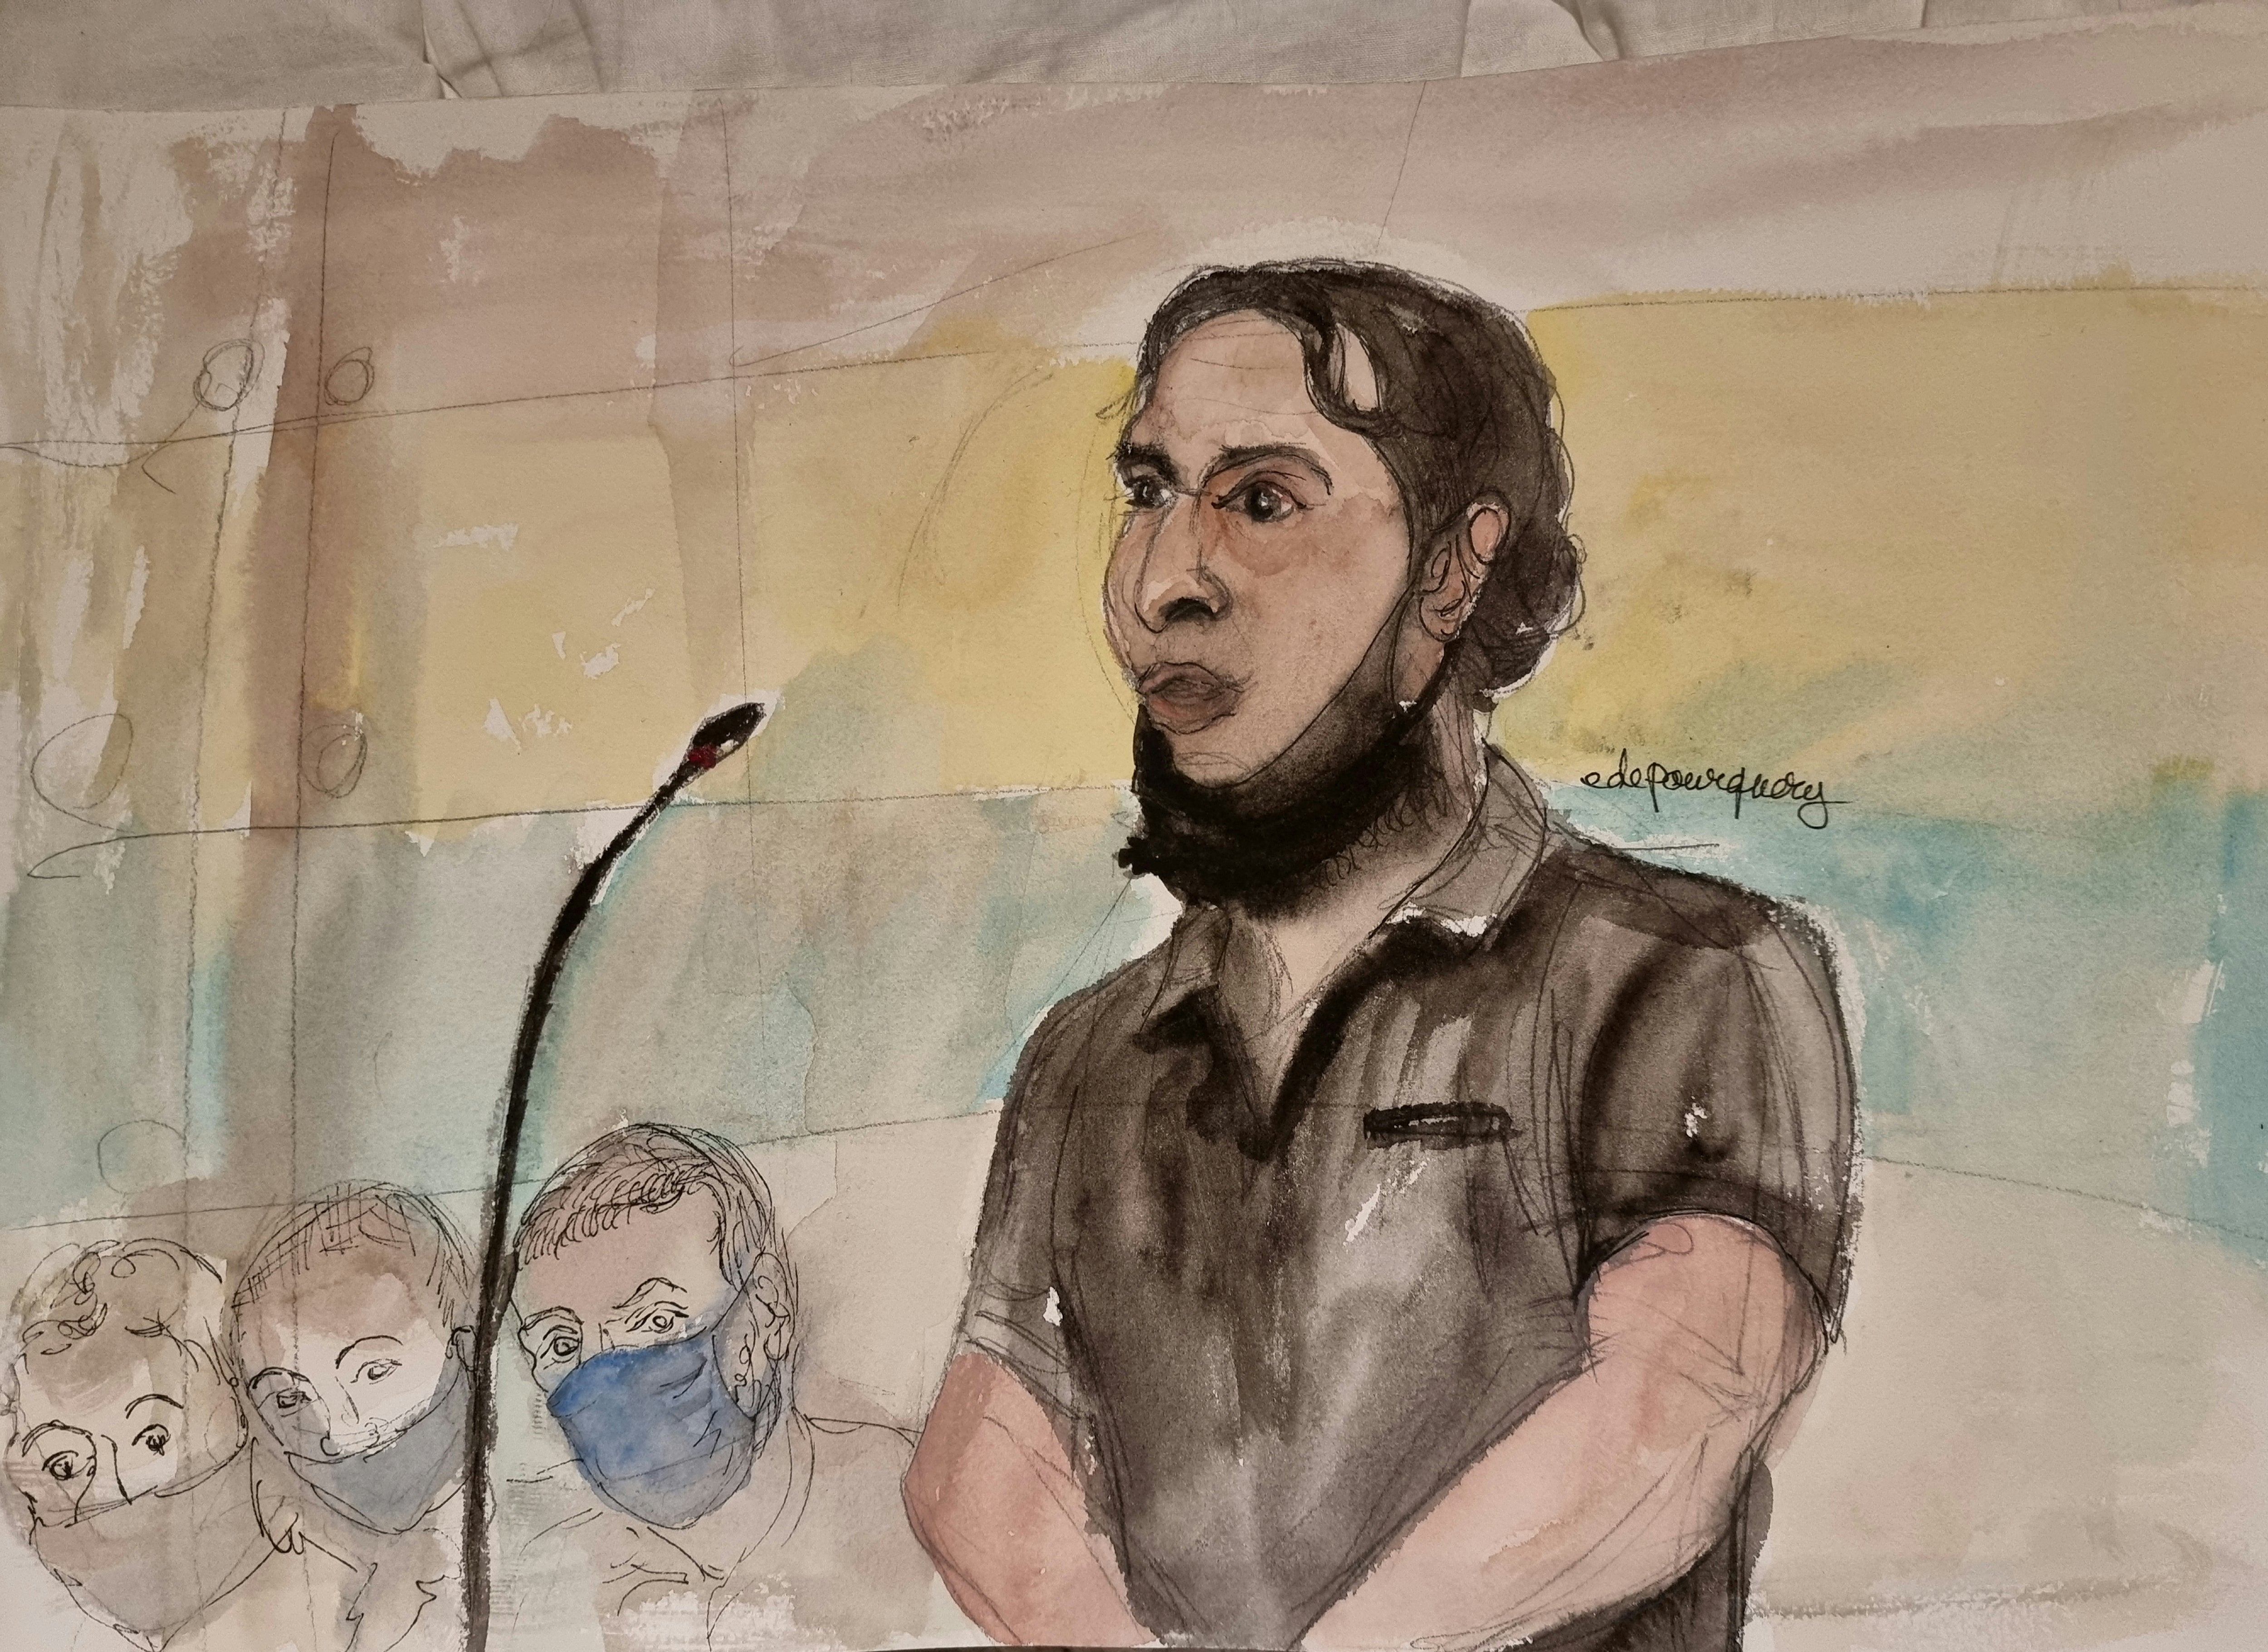 An artist’s sketch of Salah Abdeslam at his trial in Paris